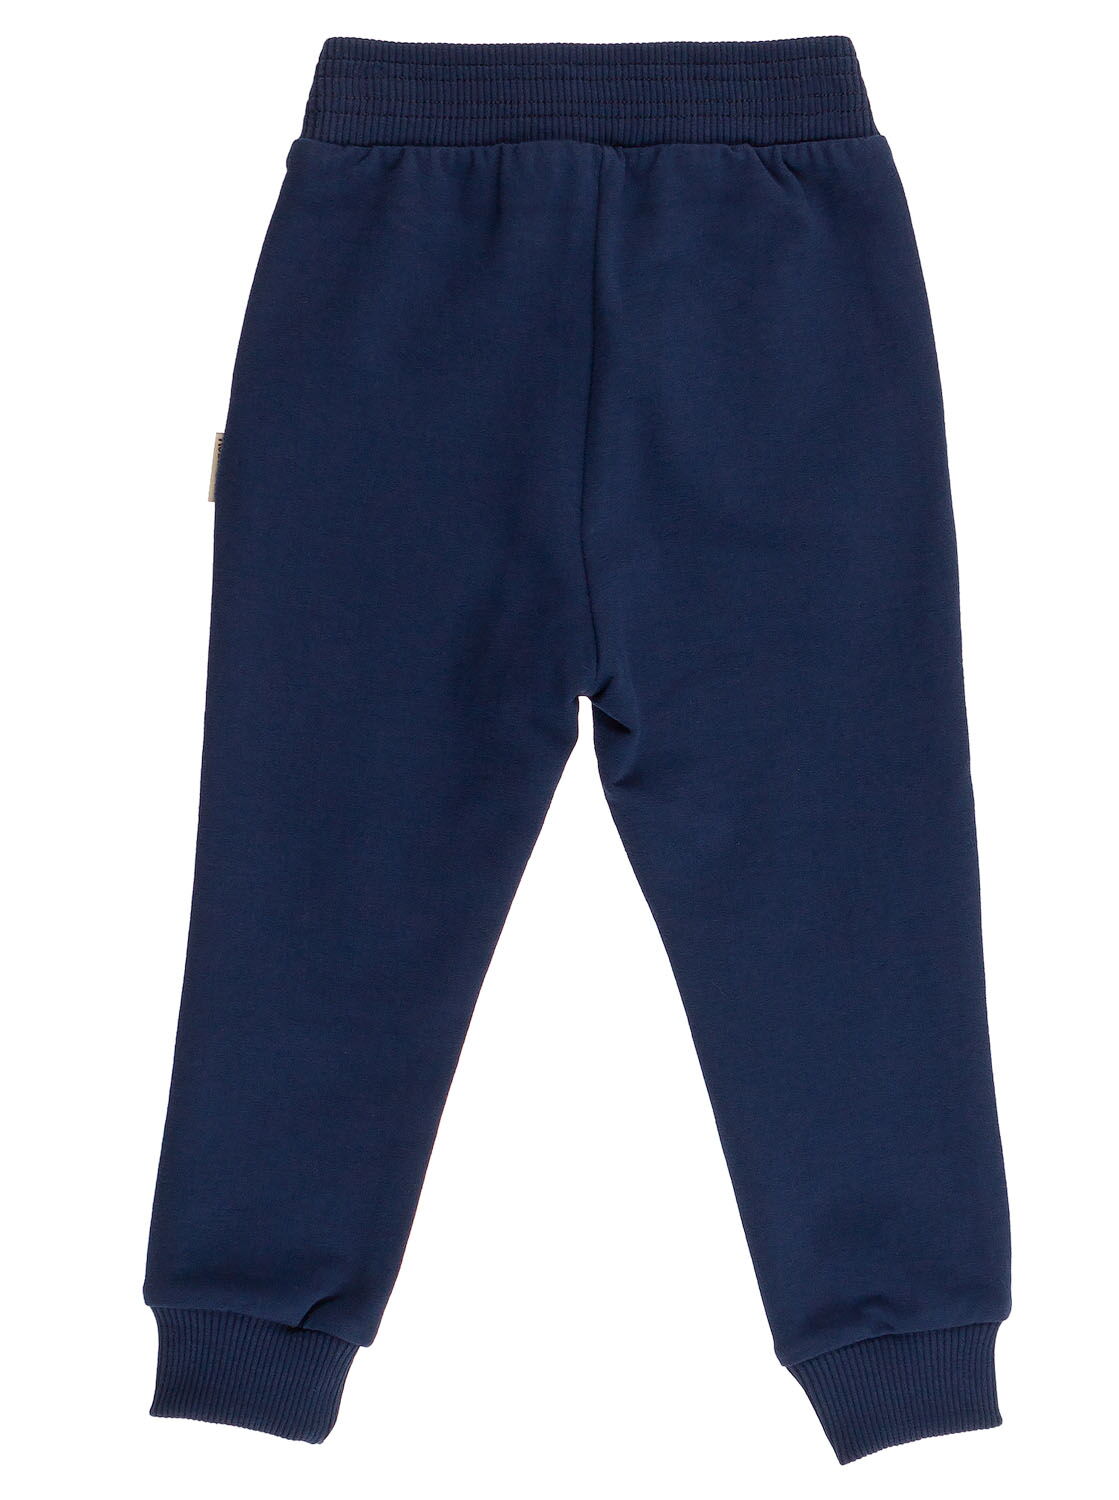 Спортивные штаны для мальчика Robinzone темно-синие ШТ-213 - фото